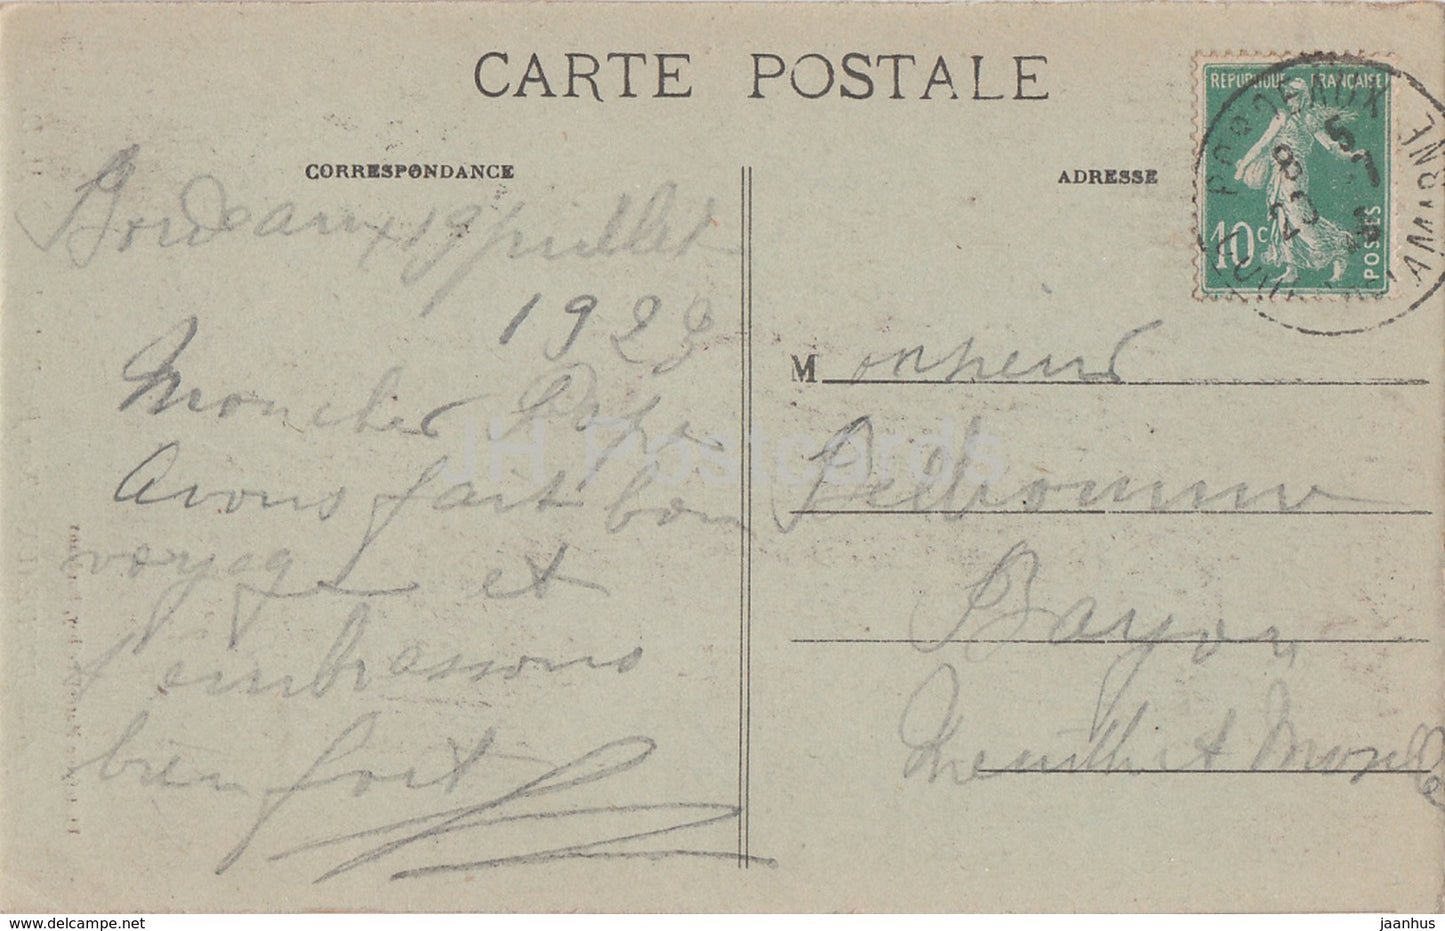 Bordeaux - La Tour Pey Berland - 146 - carte postale ancienne - 1923 - France - occasion